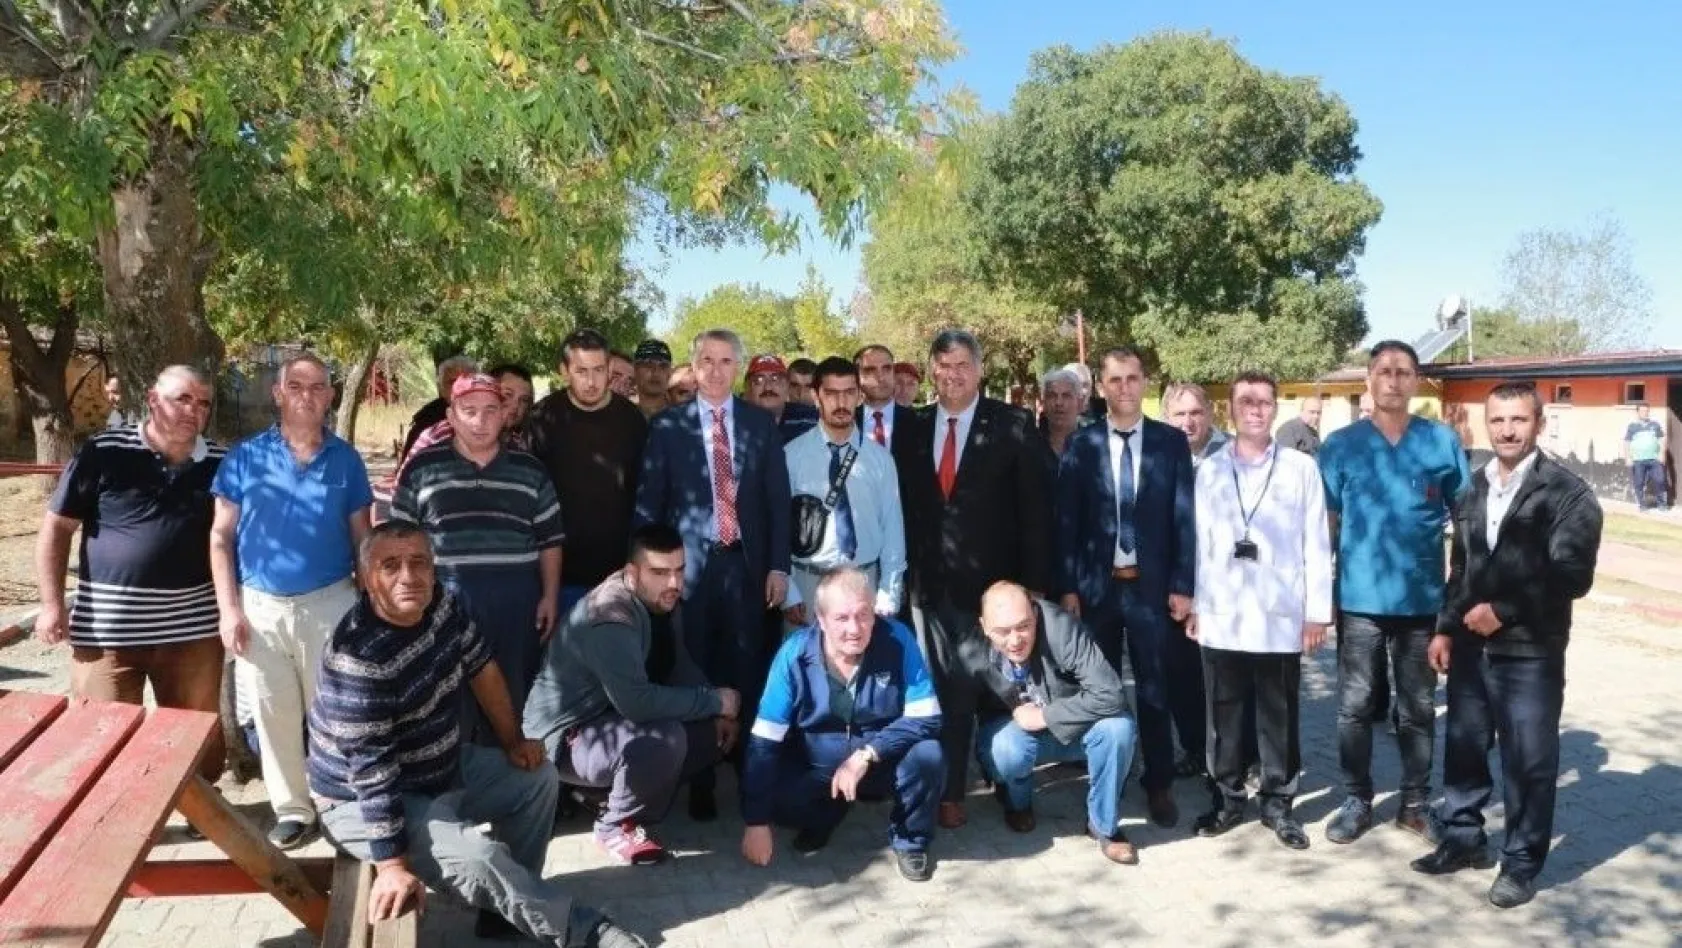 Rehabilitasyon merkezi sakinleri, Erdoğan'ı çaya davet etti